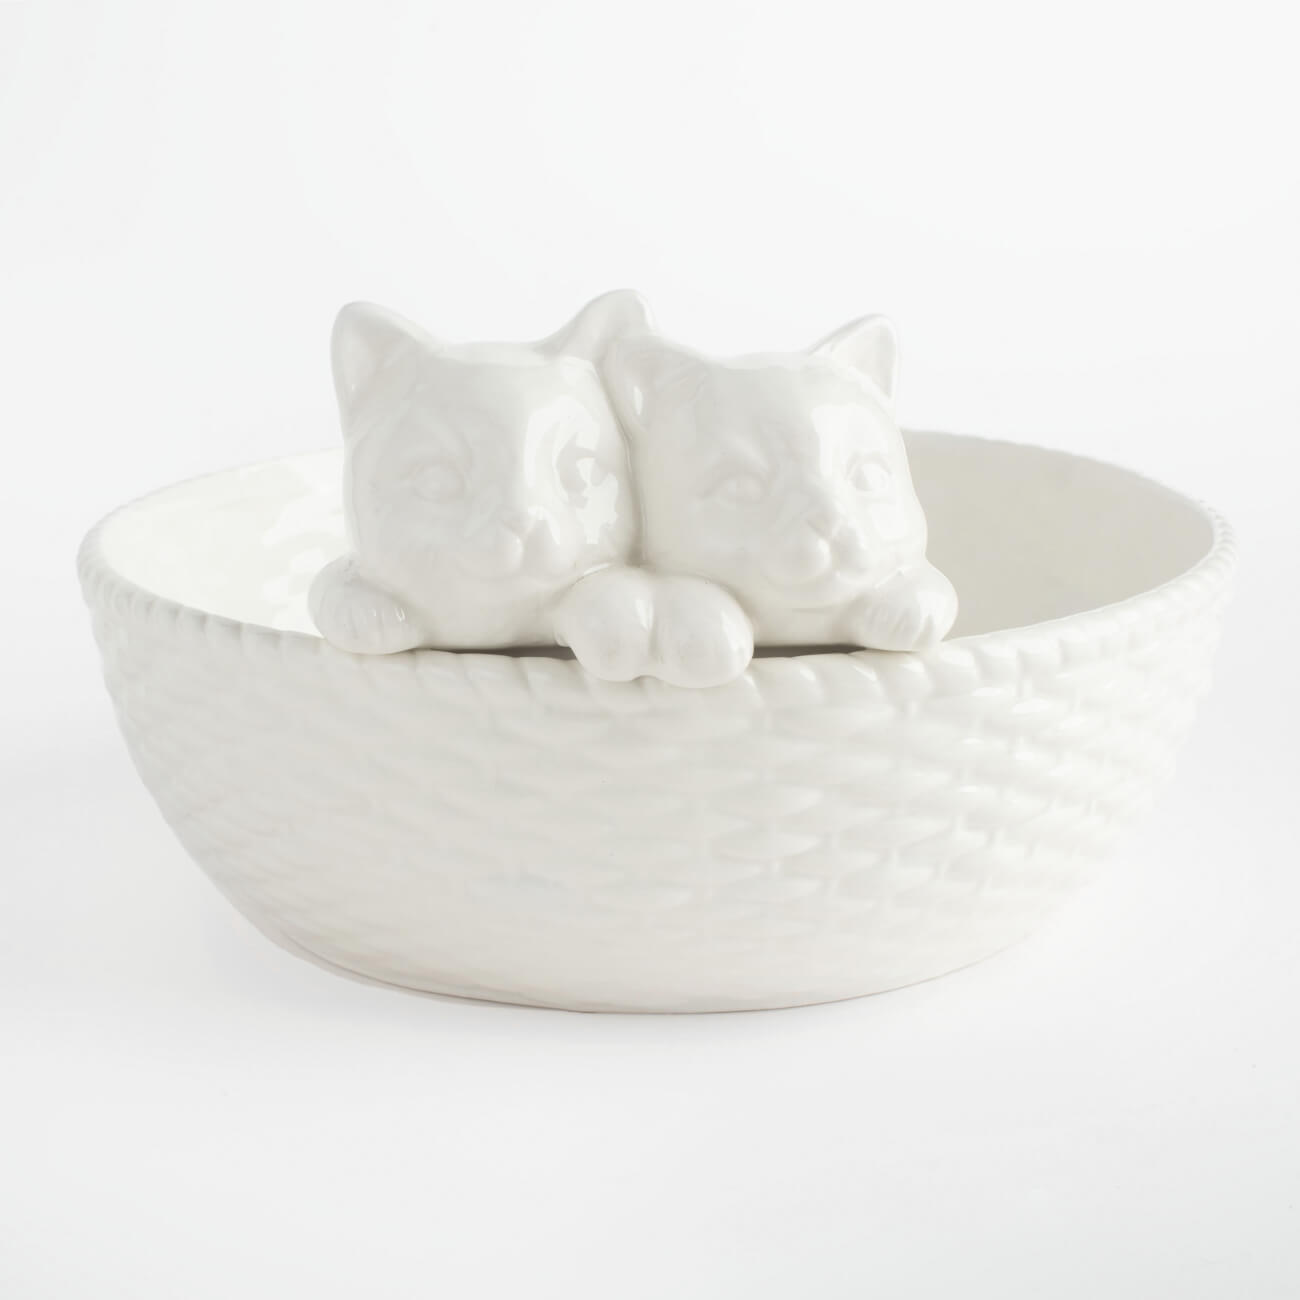 Блюдо глубокое, 24х13 см, керамика, белое, Коты в корзине, Kitten на leeco le max 2 ные коты